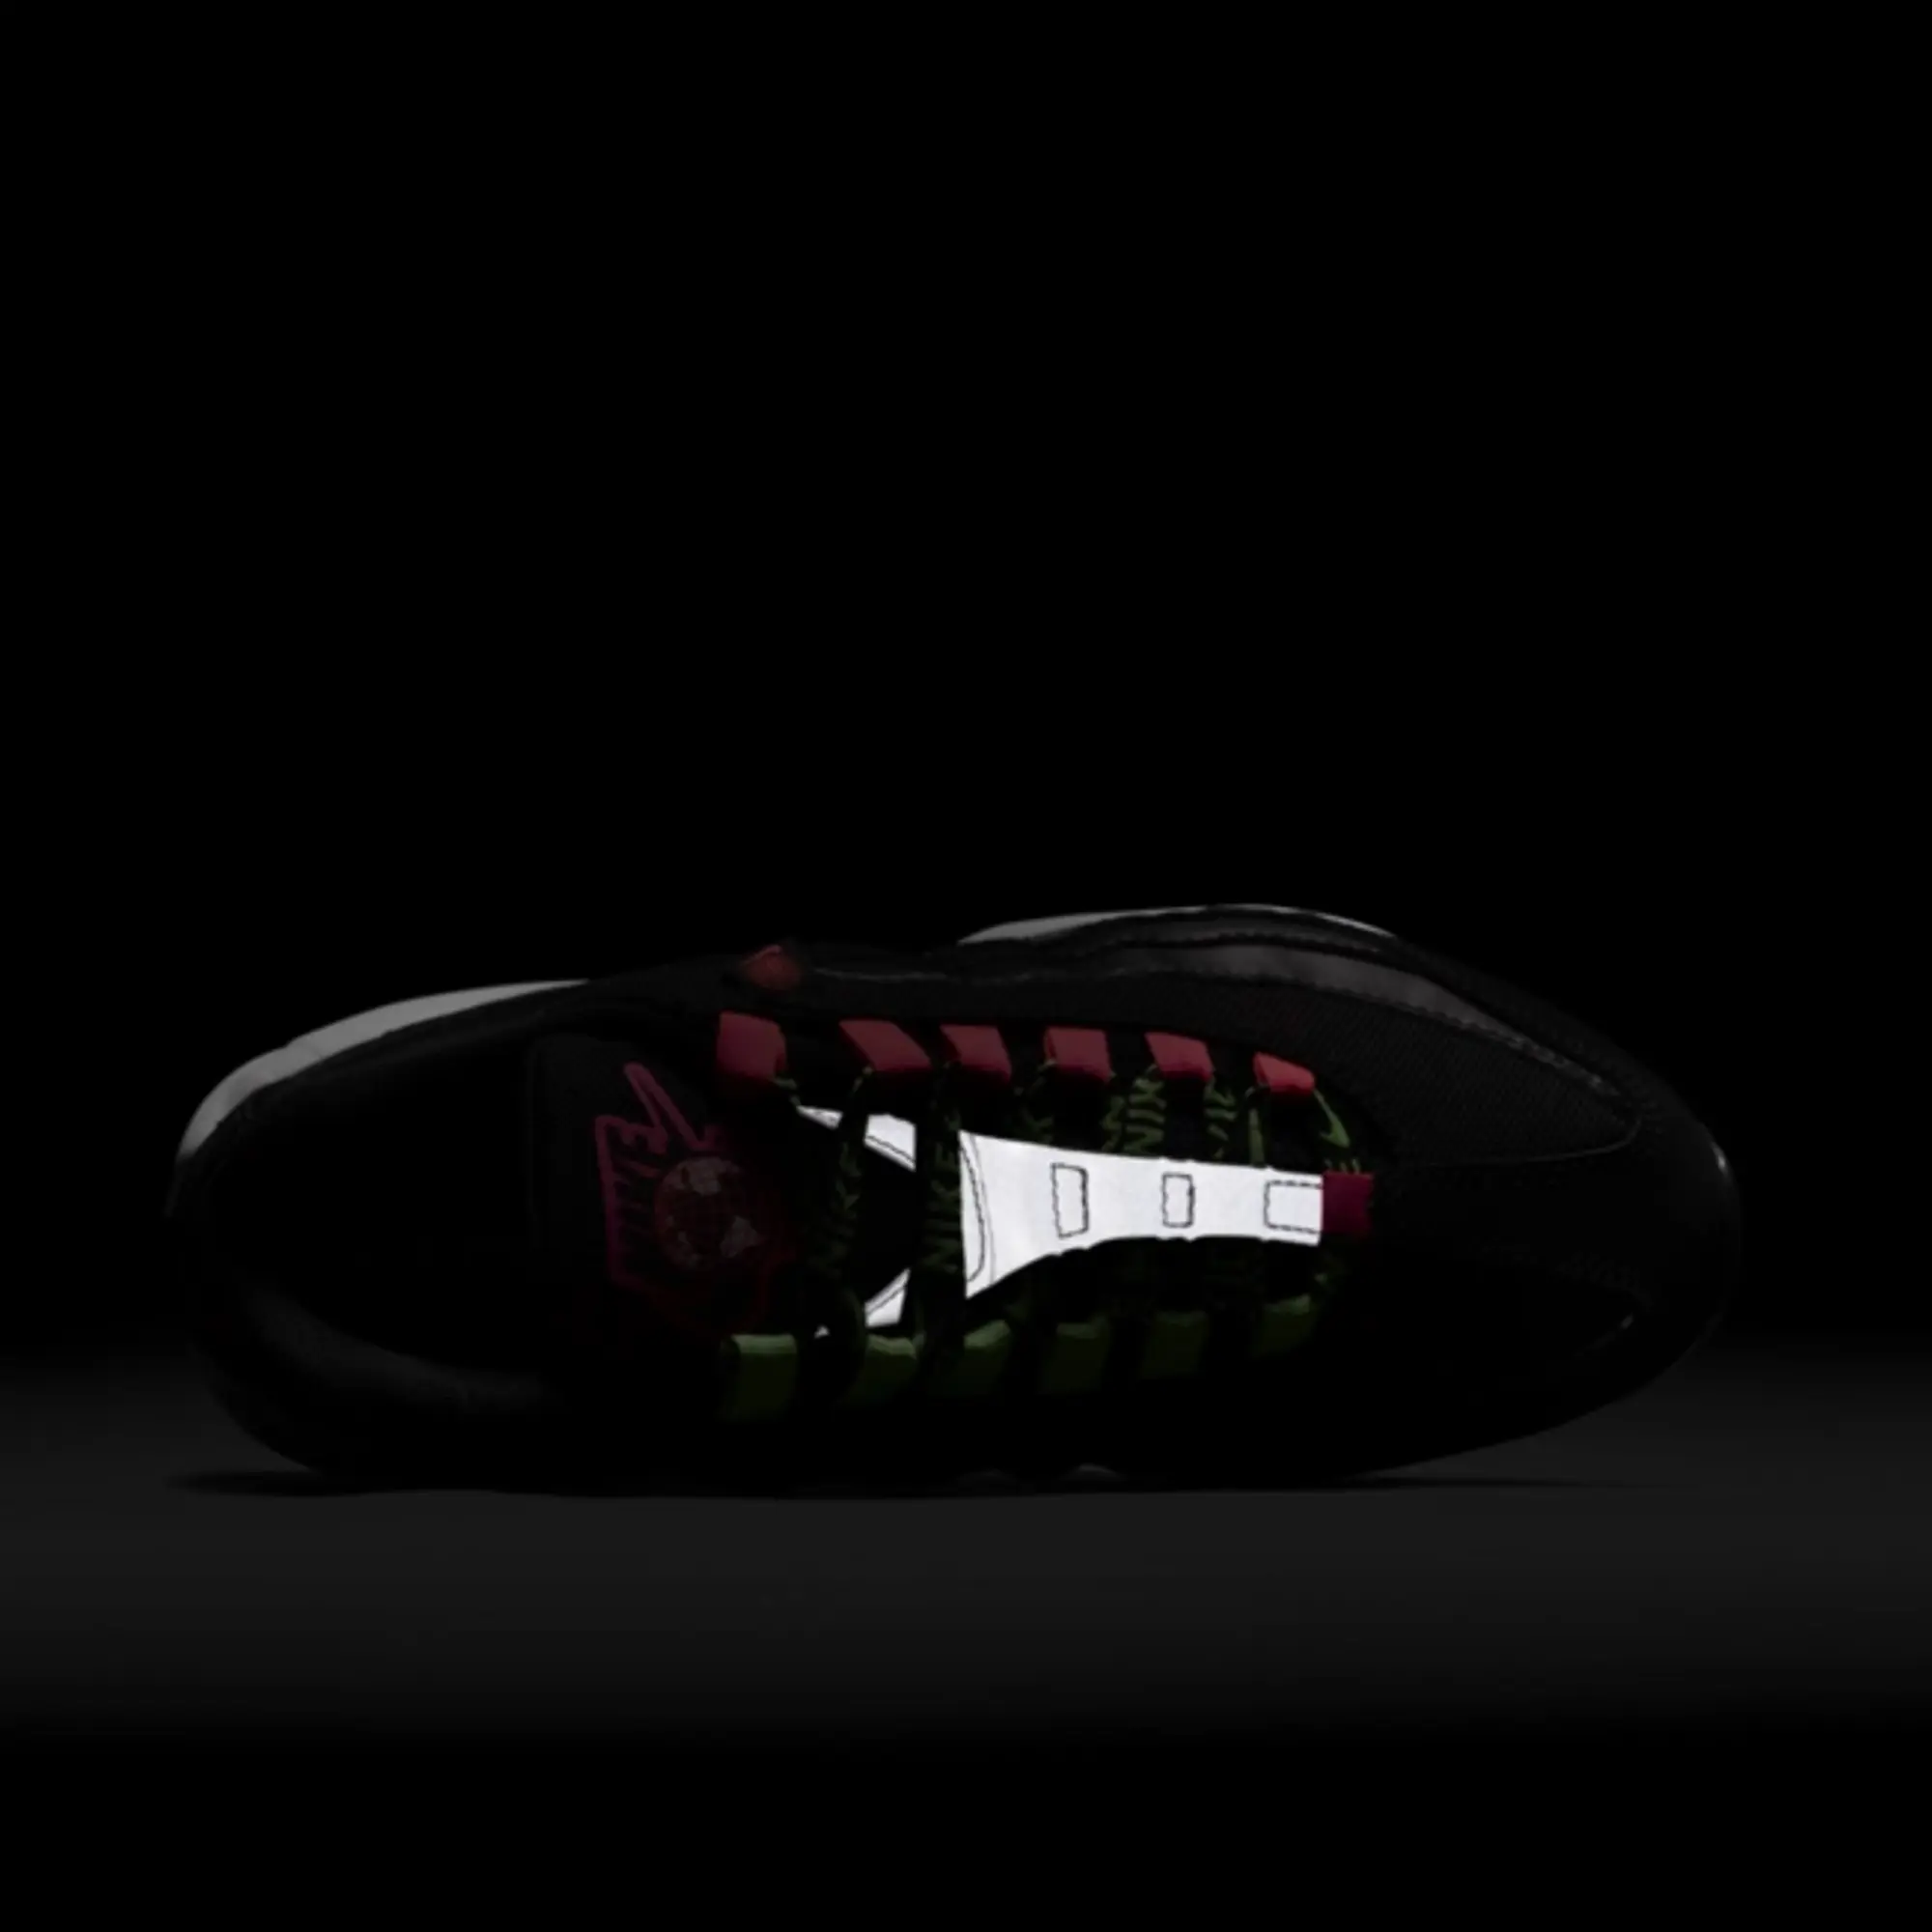 Nike WMNS Air Max 95 Worldwide Black